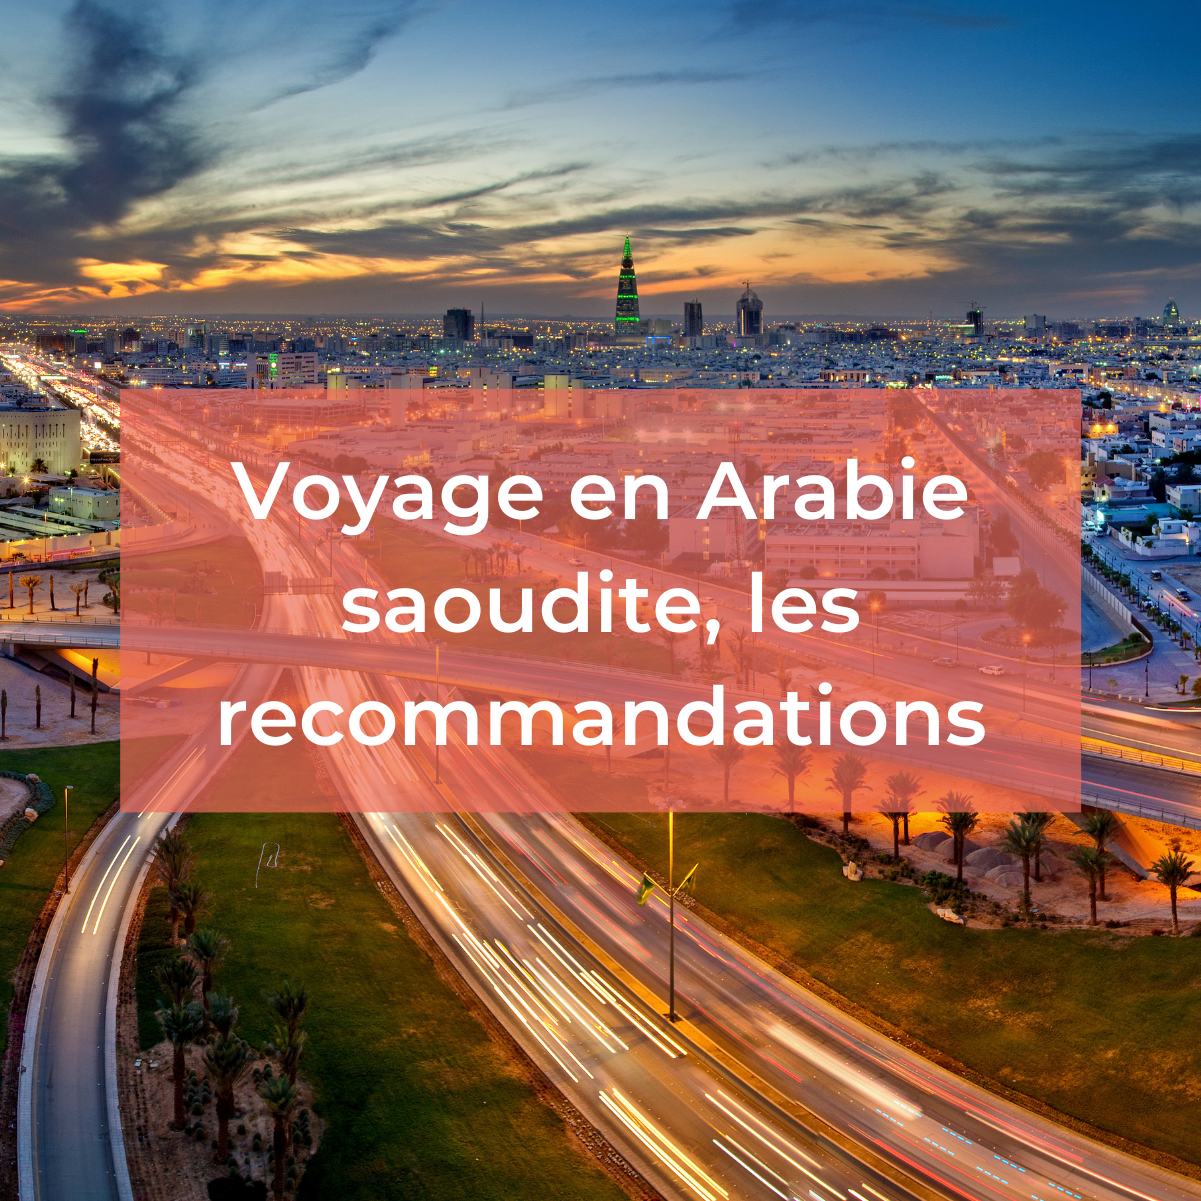 Voyage en Arabie saoudite : informations utiles